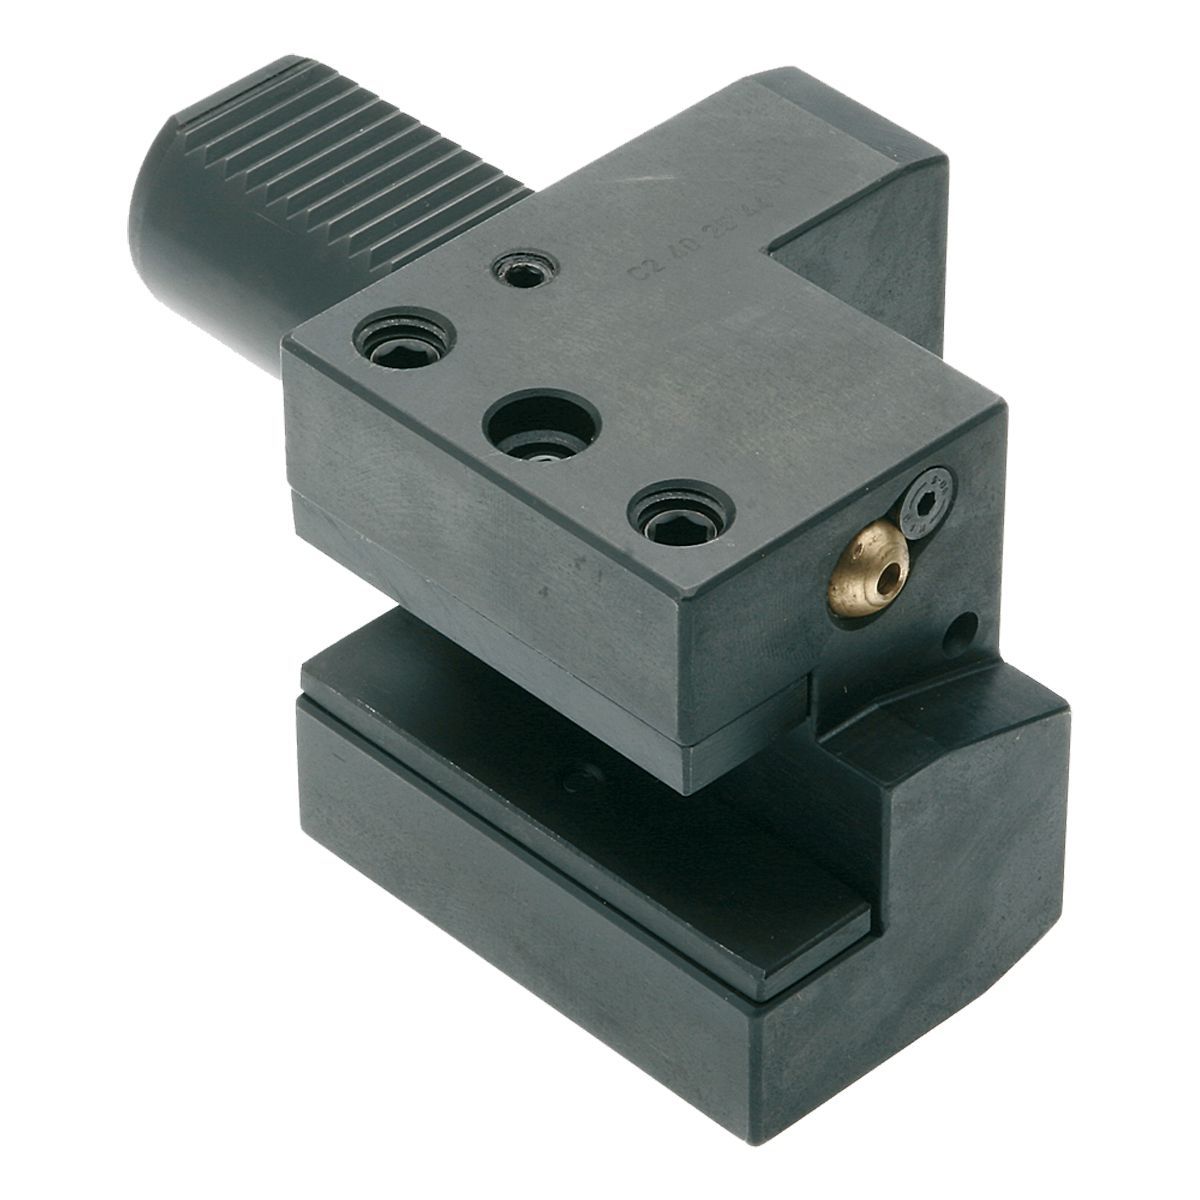 Axial-Werkzeughalter C2-25x16 DIN 69880 (ISO 10889)